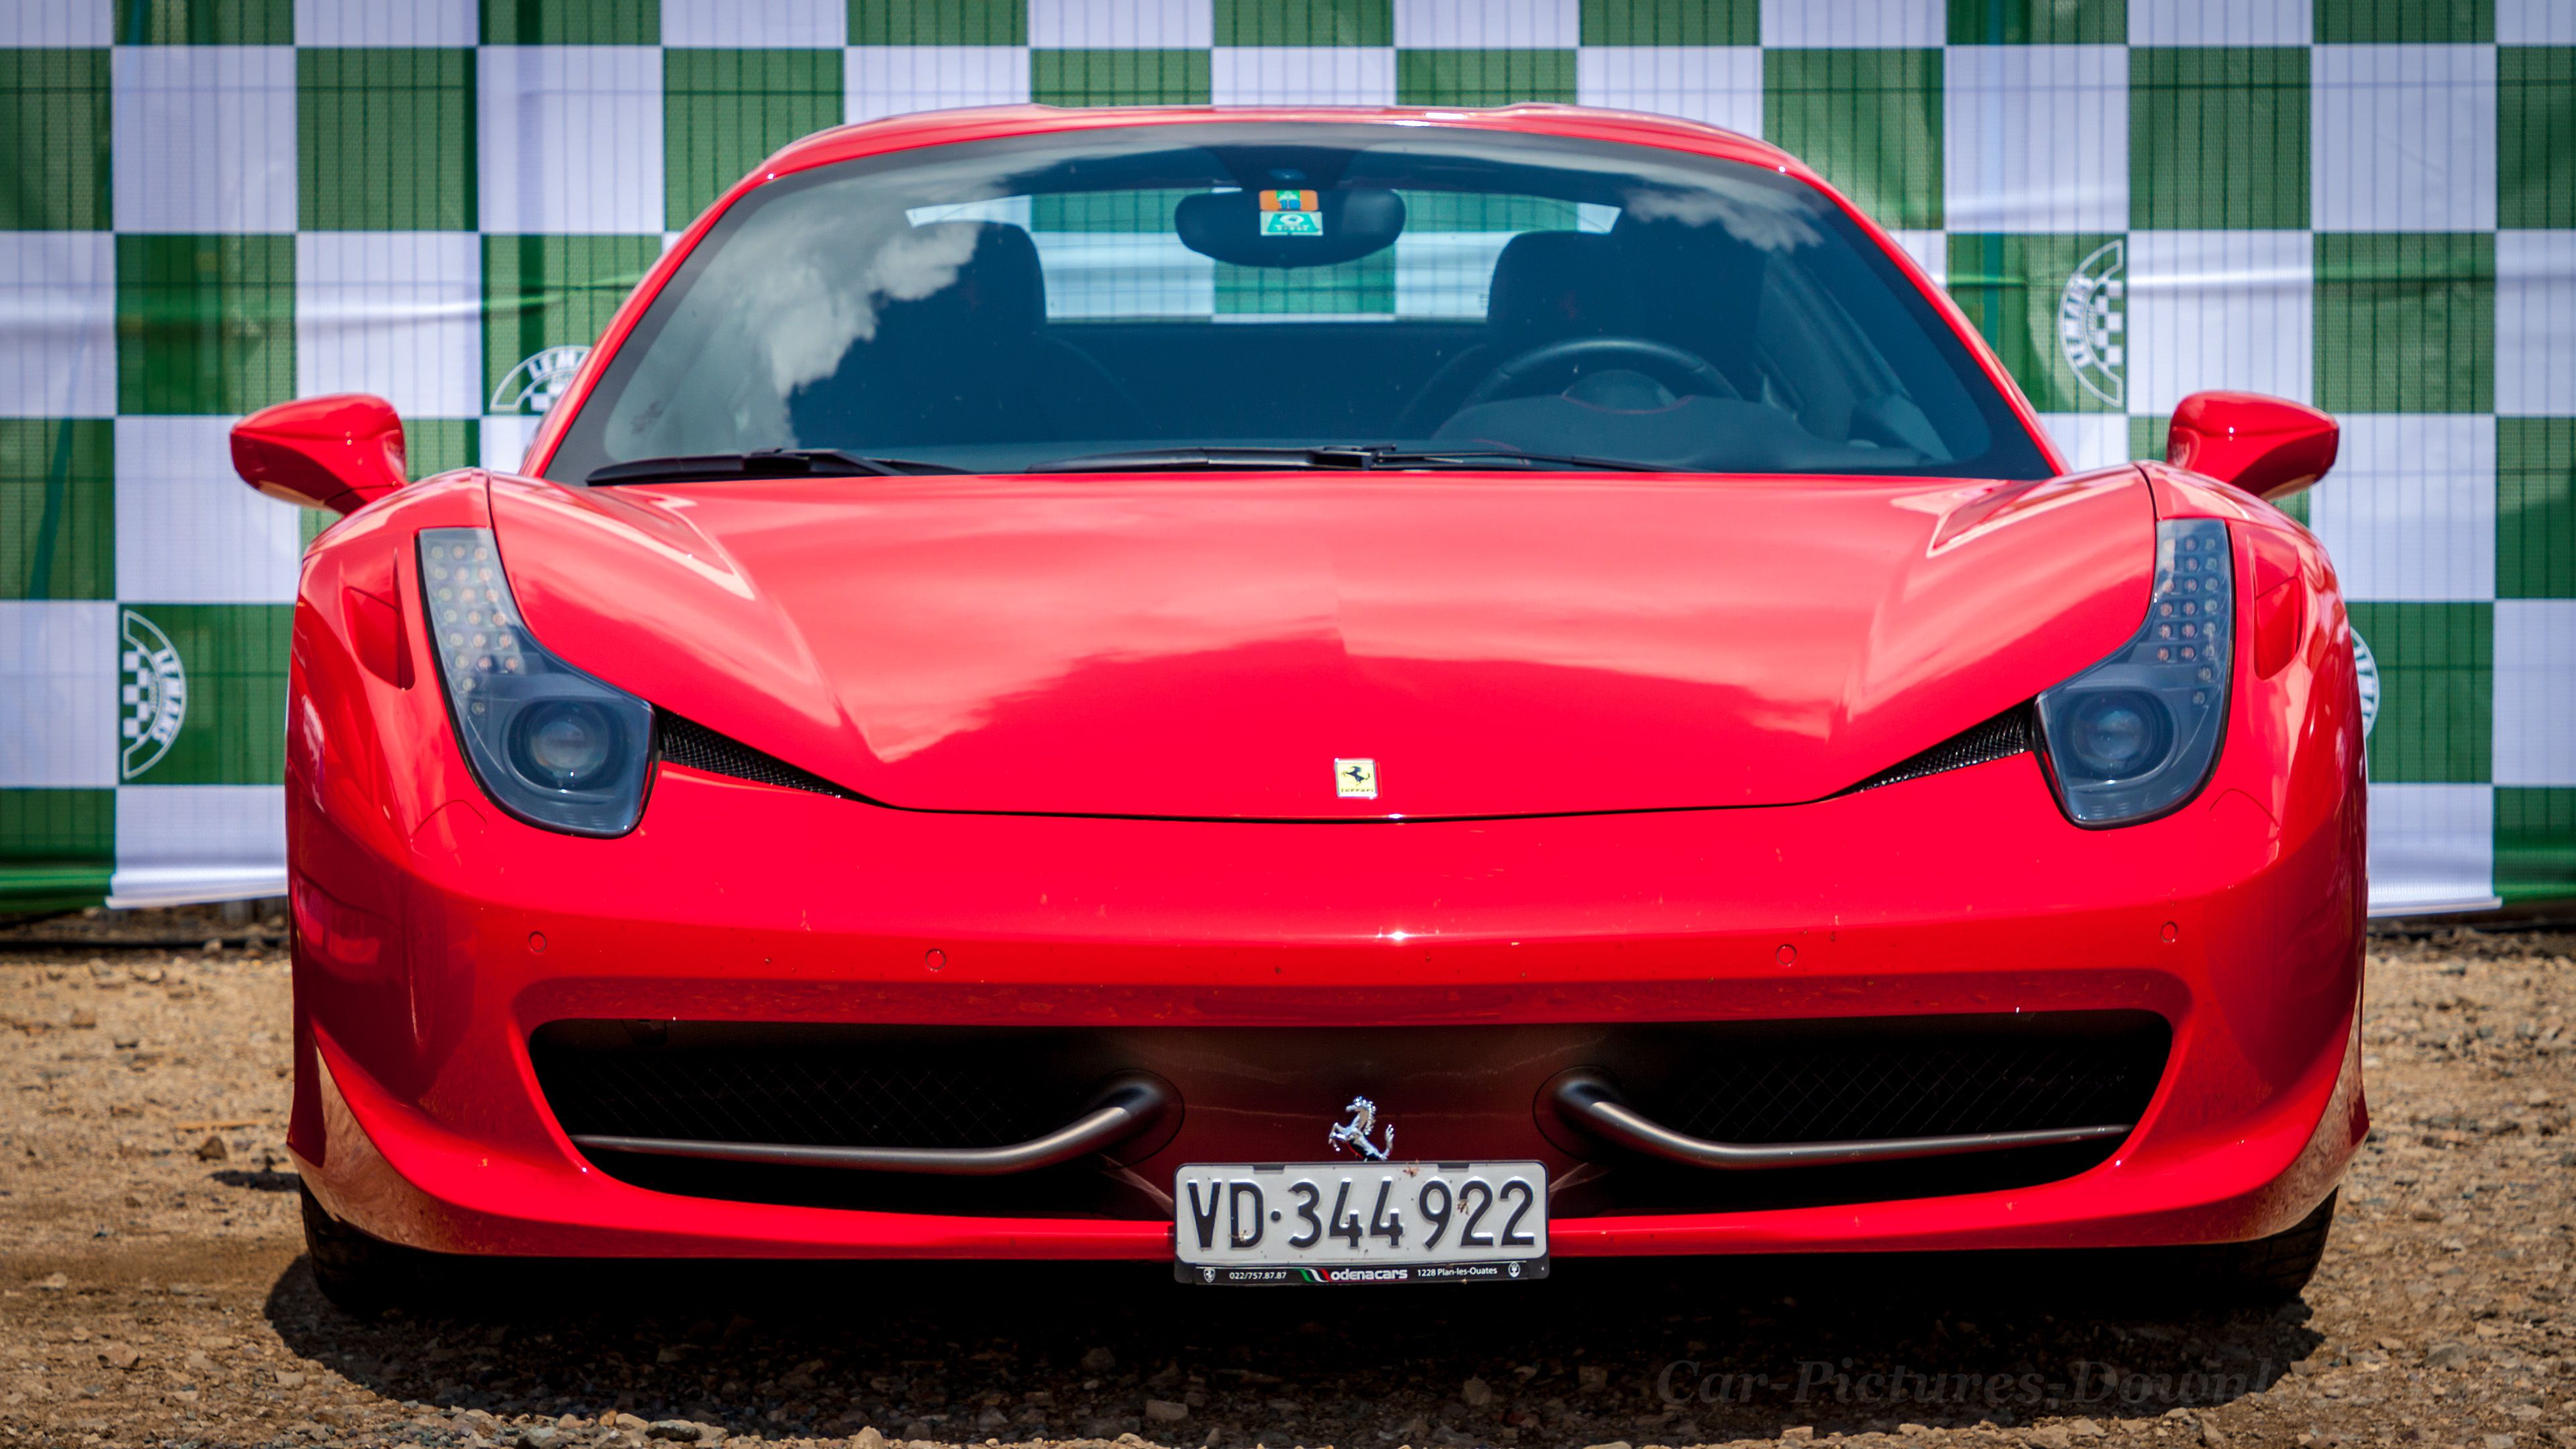 Ferrari Wallpaper Image & HD Desktop & Mobile